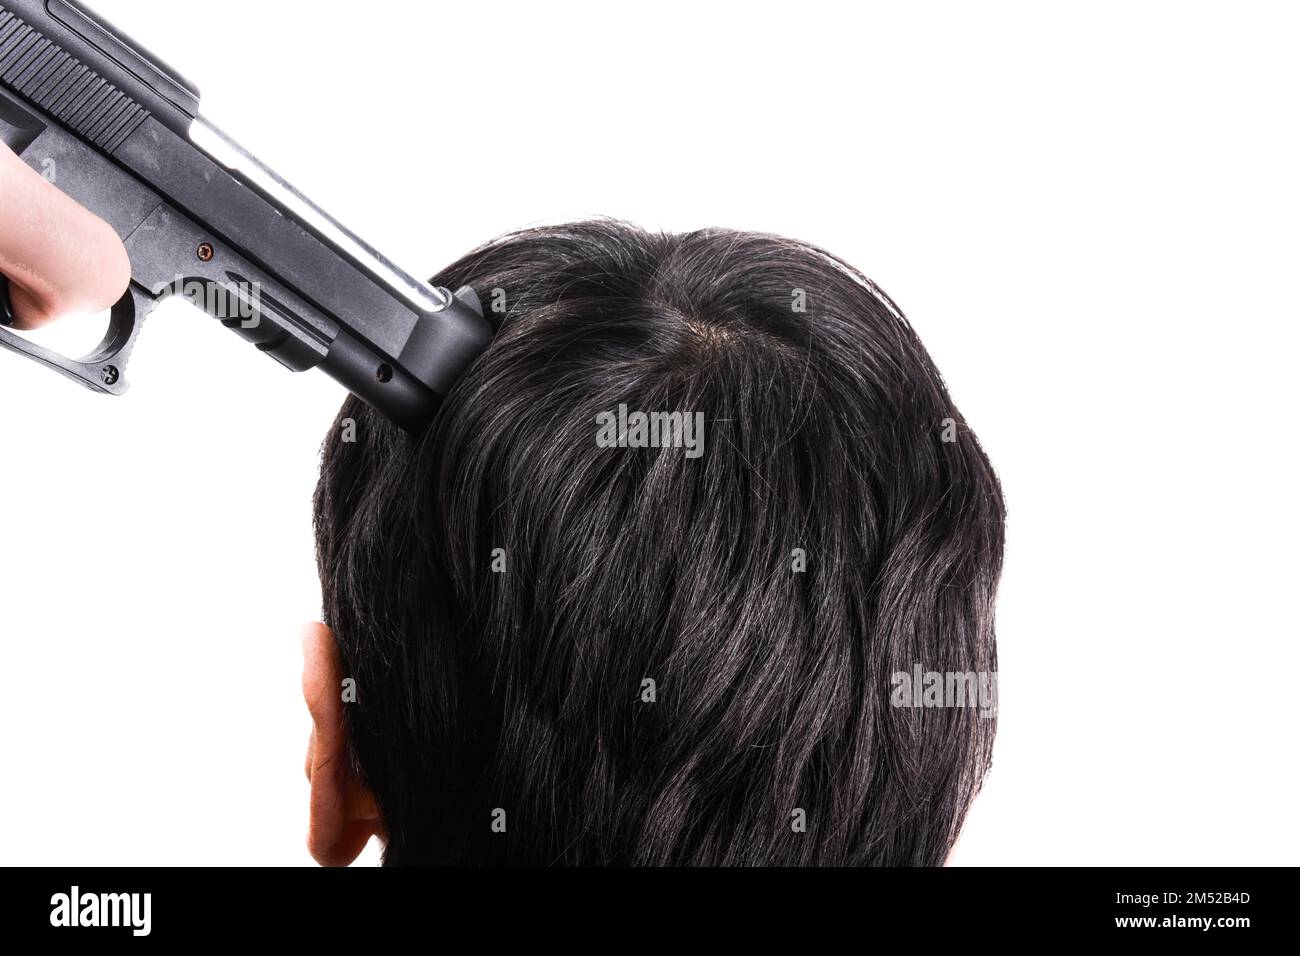 Der Kopf mit der Pistole in der Hand auf einen weißen Hintergrund gerichtet ist Stockfoto